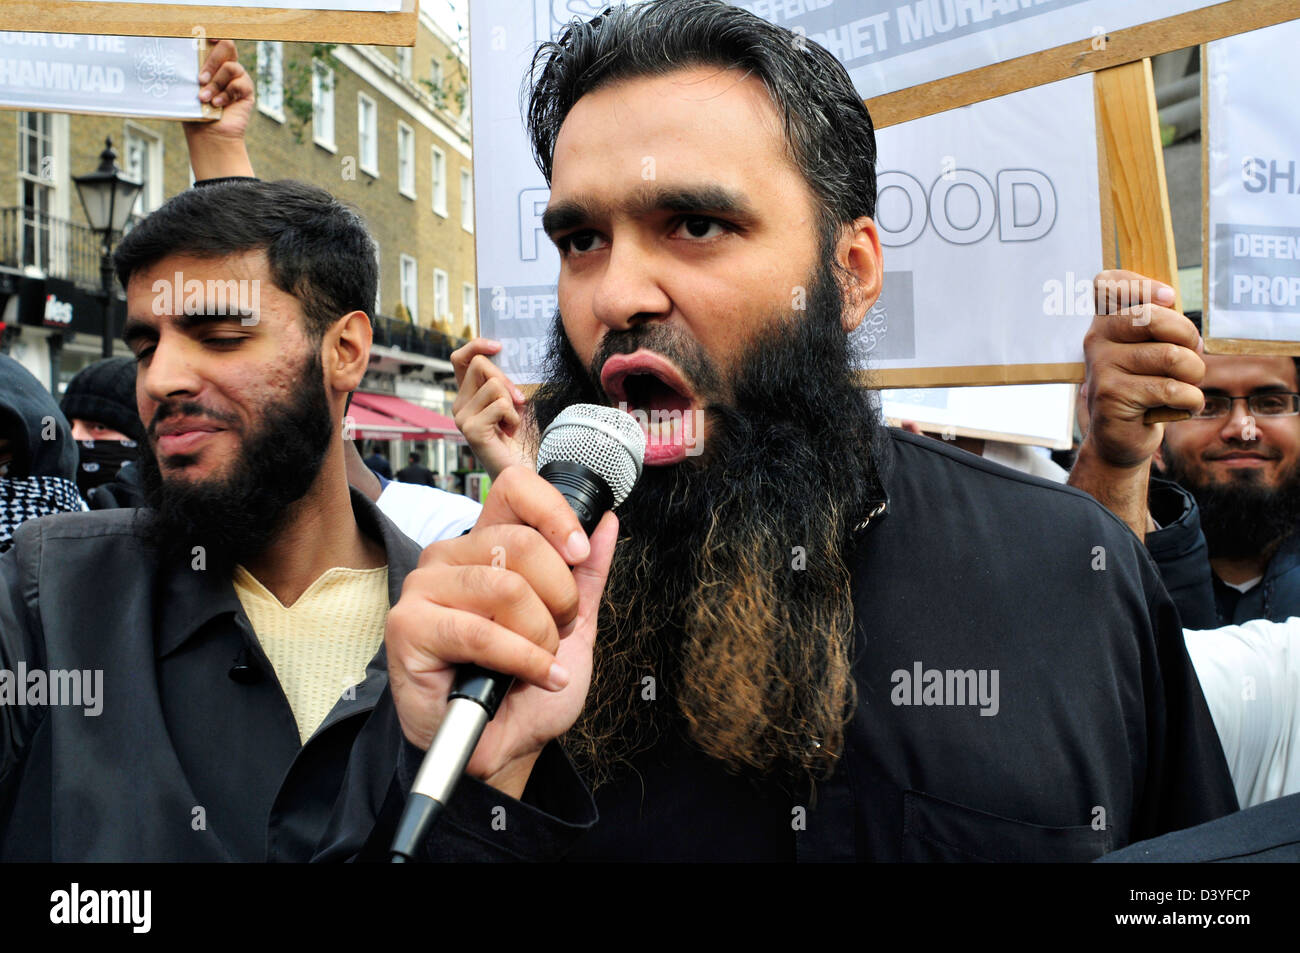 Un hombre barbado grita consignas durante una protesta contra el Profeta Mohammad caricaturas. Londres, Reino Unido Foto de stock